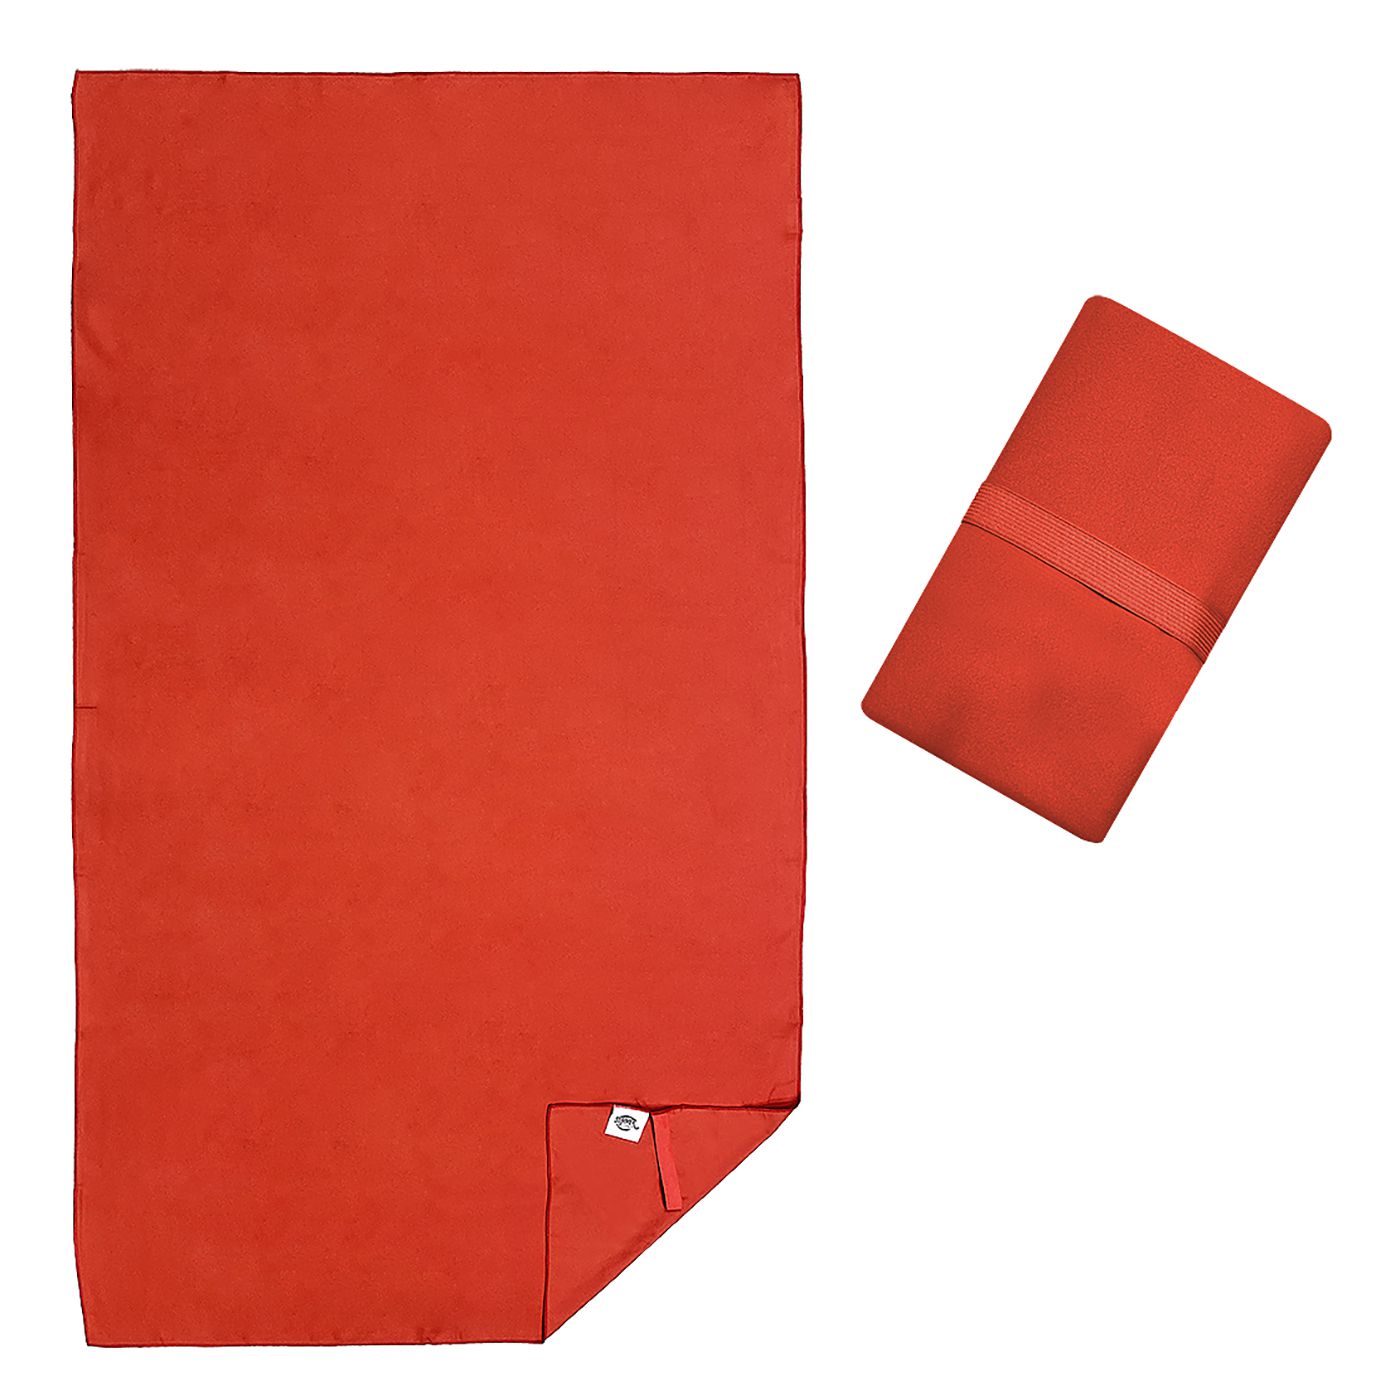 Πετσέτα Θαλάσσης Suede Μικροΐνες Κόκκινη 272gr 85x160cm (42-2710/ΚΟΚΚ)